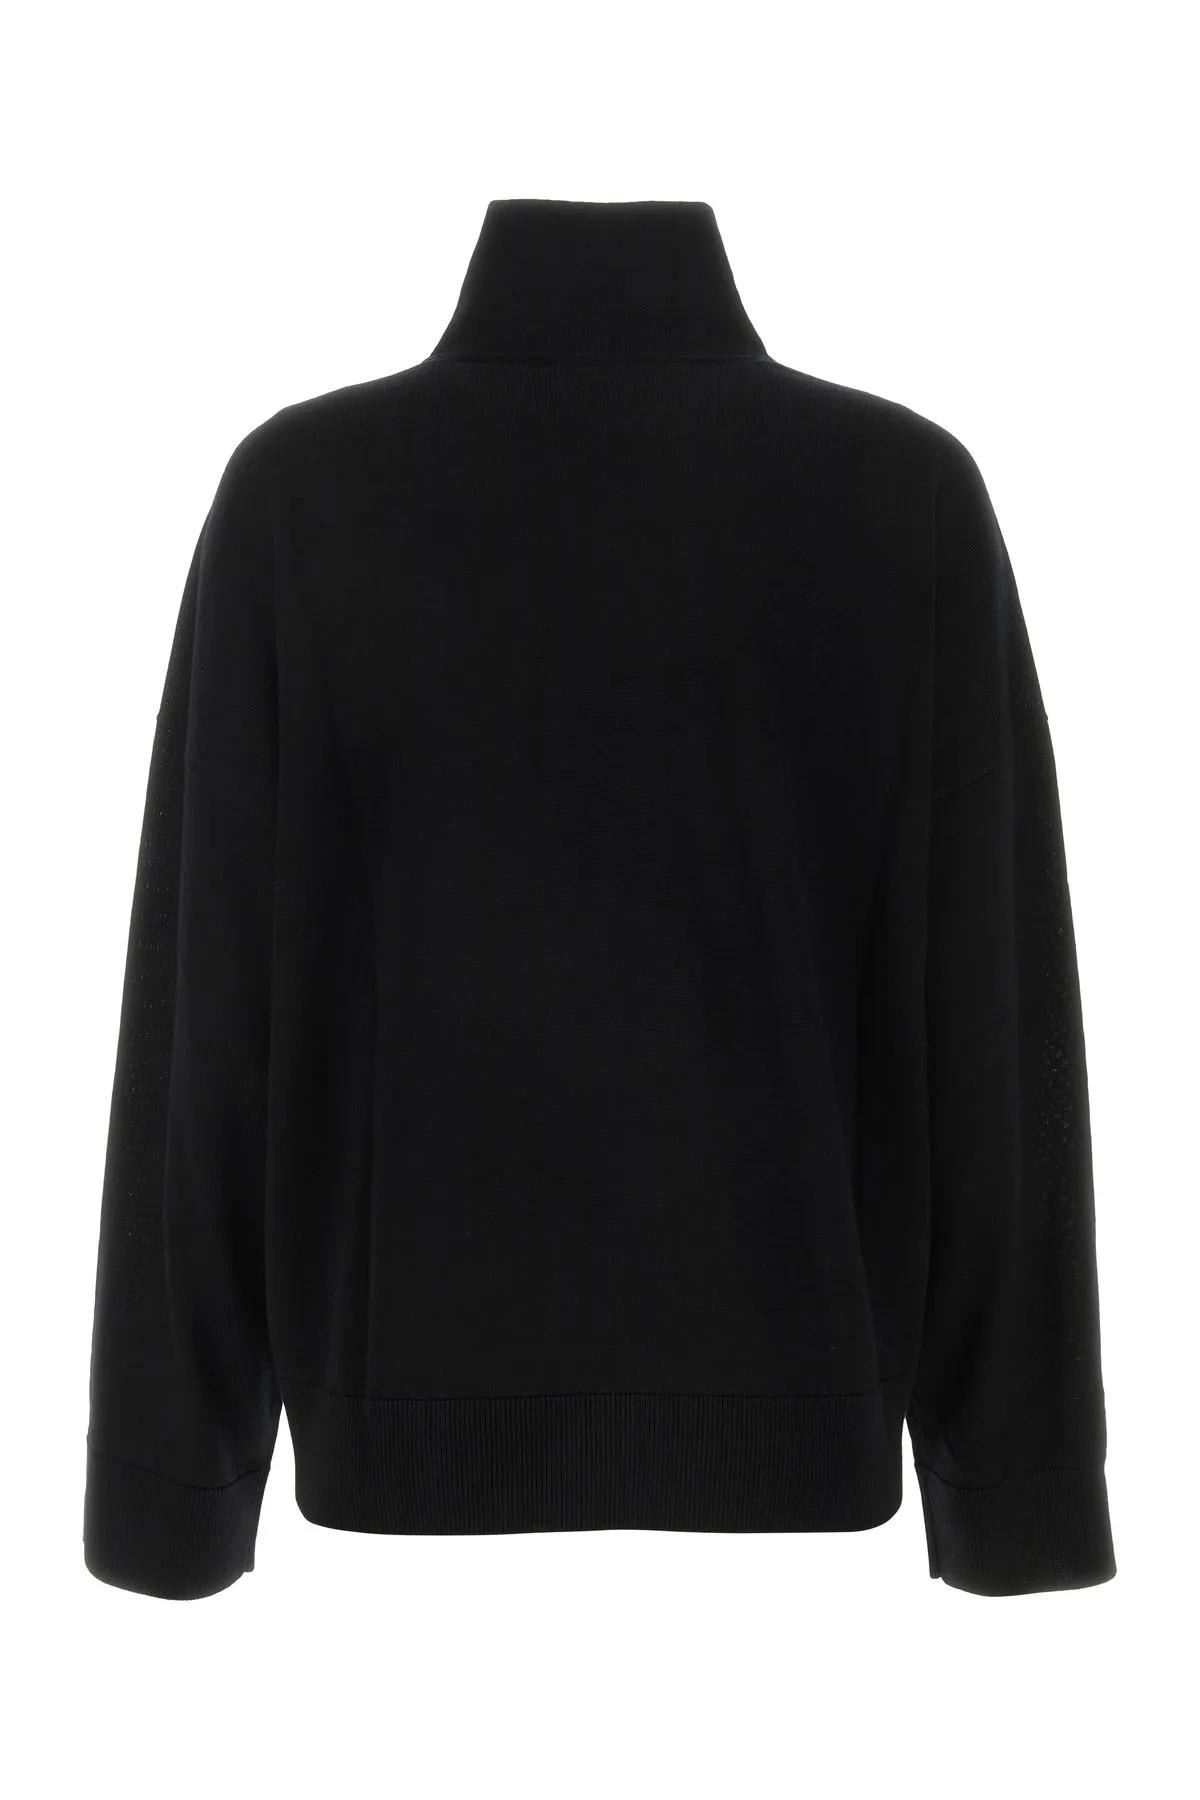 Shop Bottega Veneta Black Wool Oversize Sweater